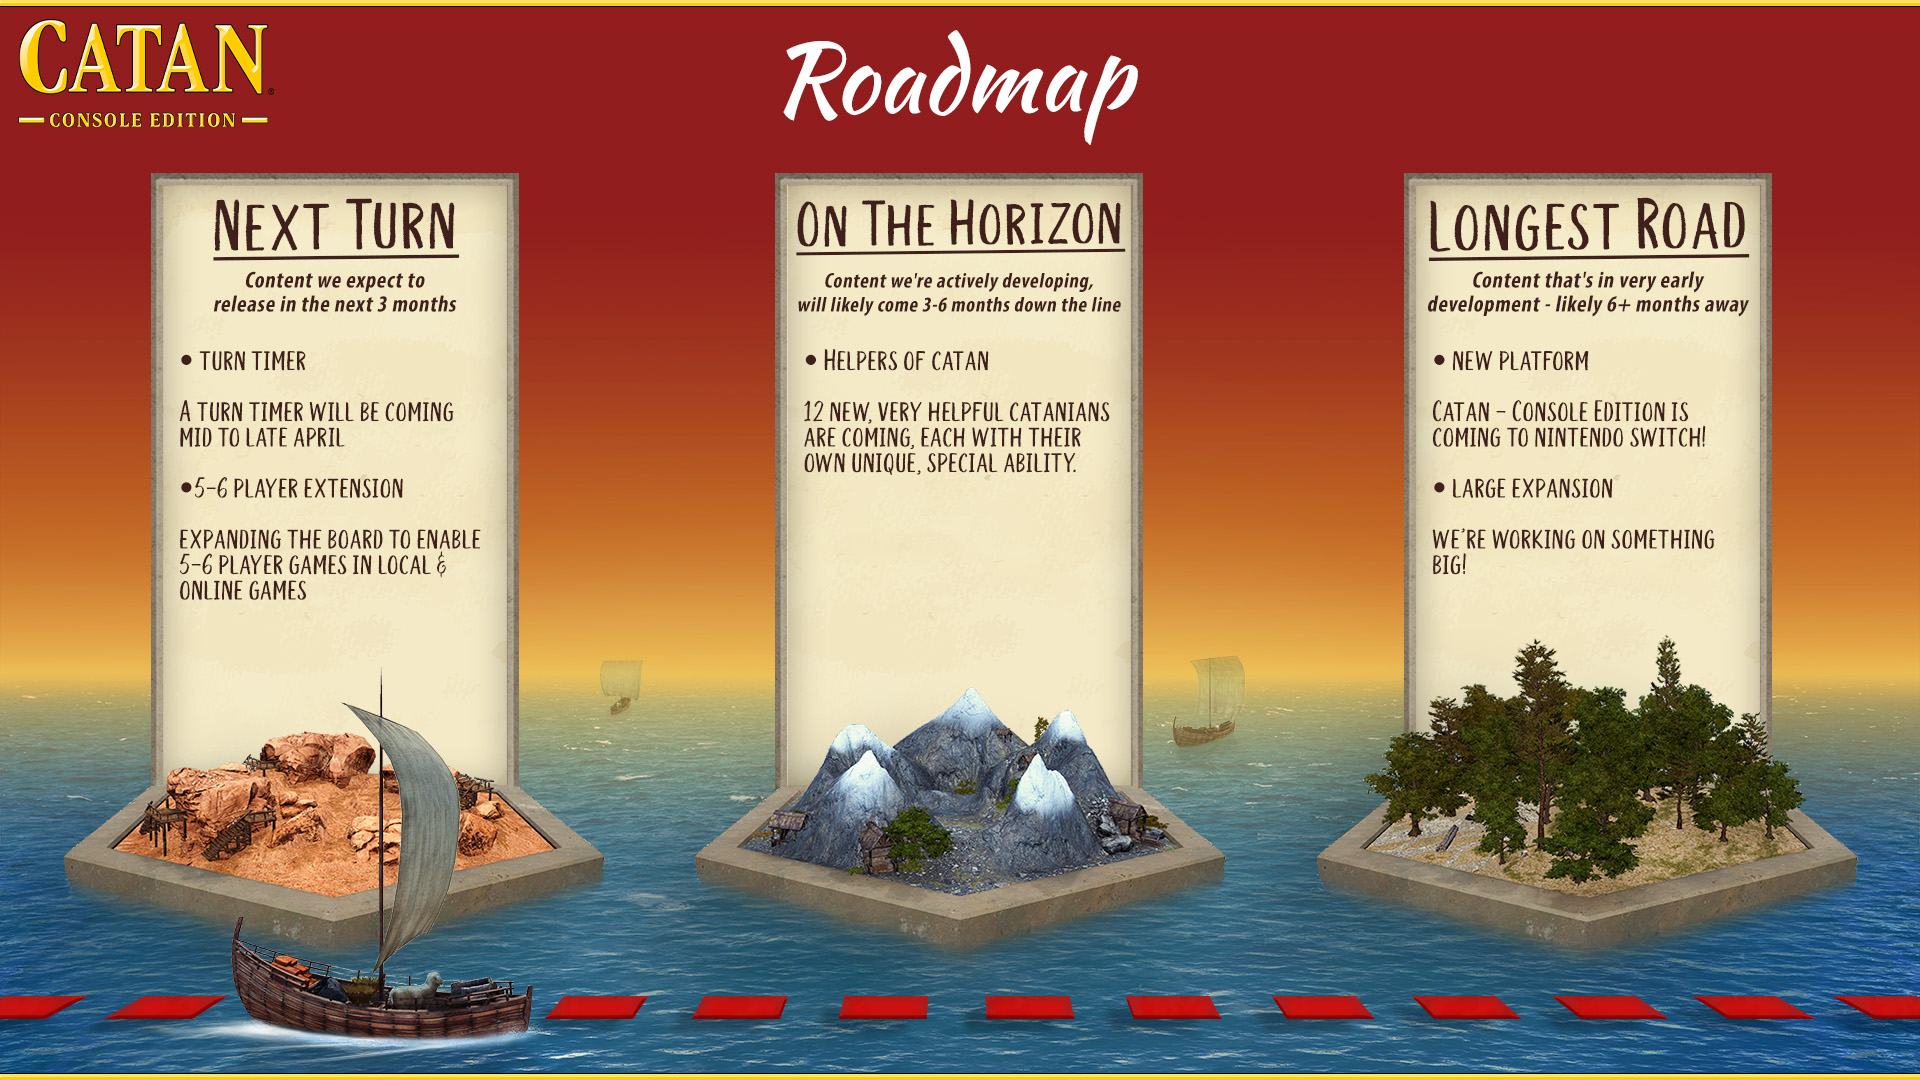 CATAN - Console Edition - Roadmap